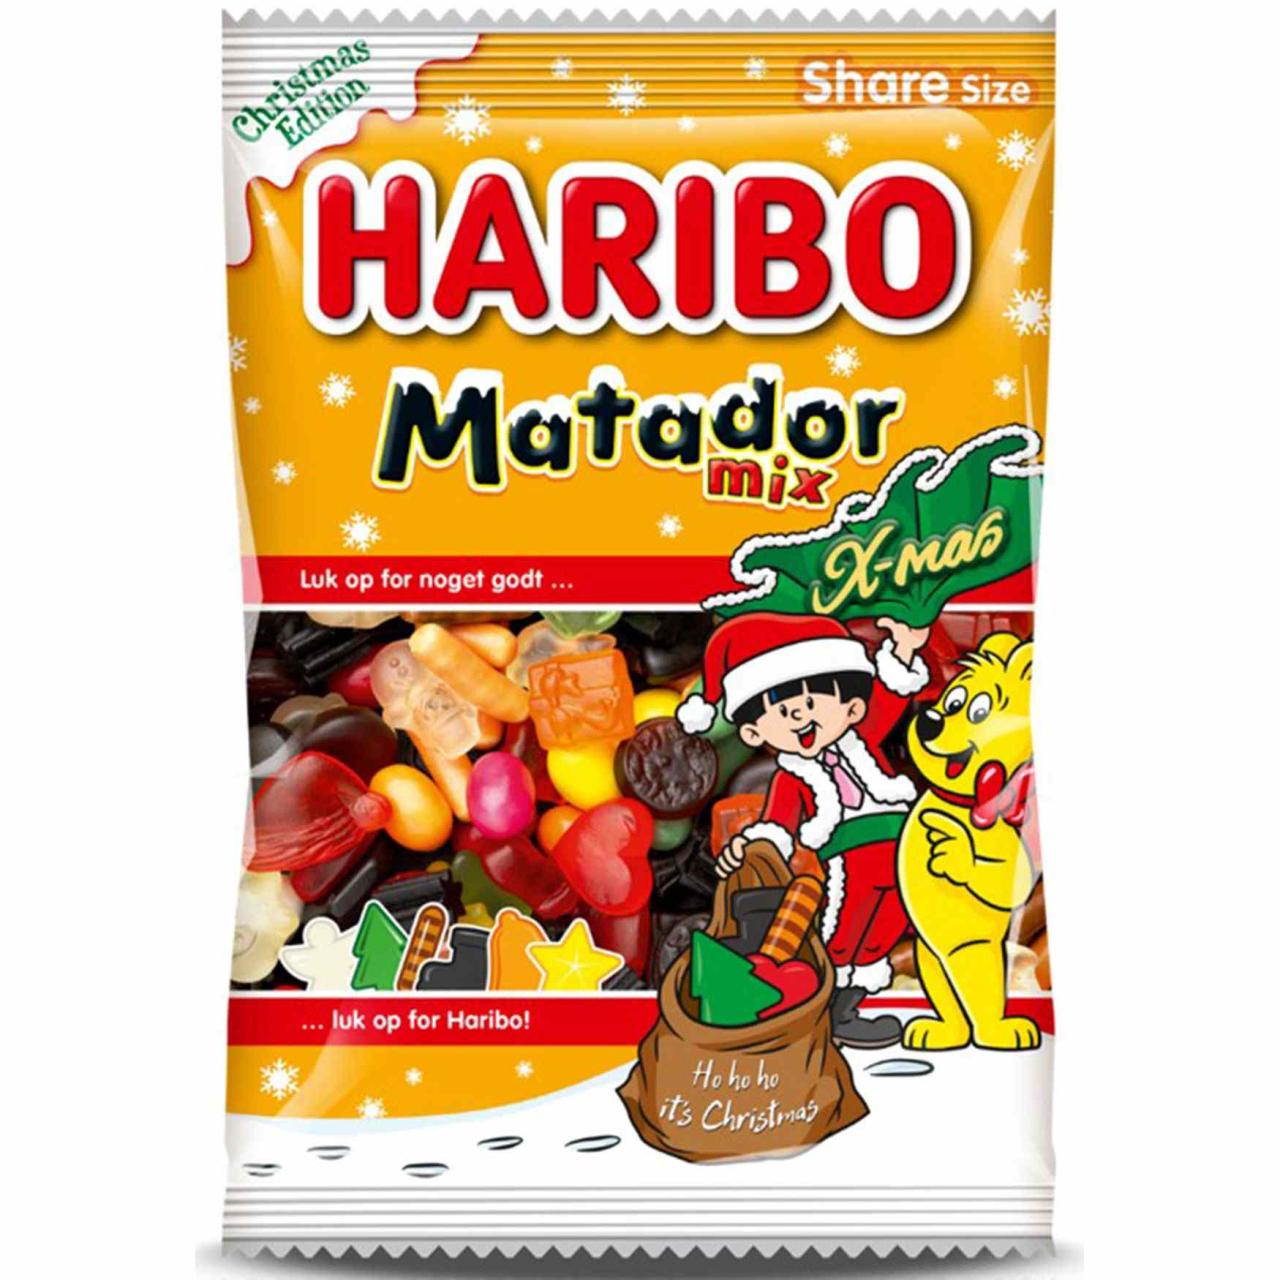 Haribo Matador Mix X-mas 360g DK jul